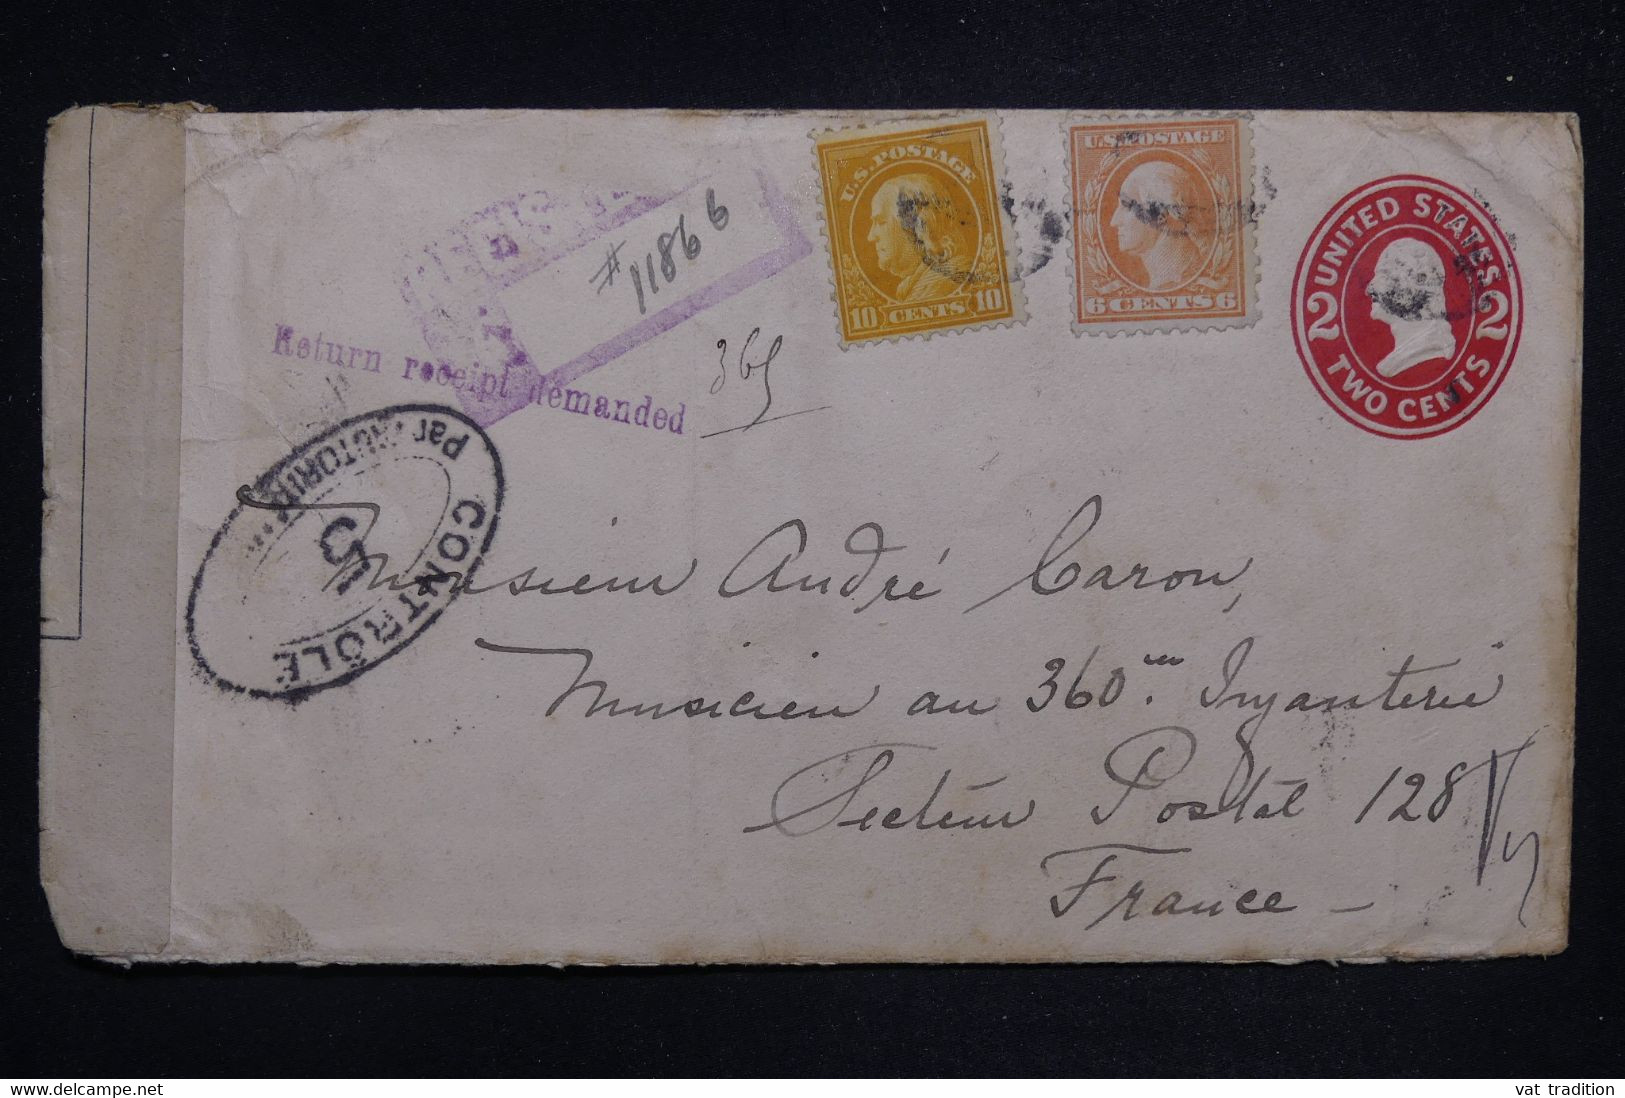 ETATS UNIS - Entier Postal + Compléments En Reco. De Portsmouth Pour Un Soldat En France En 1917 Avec Contrôle- L 127185 - 1901-20